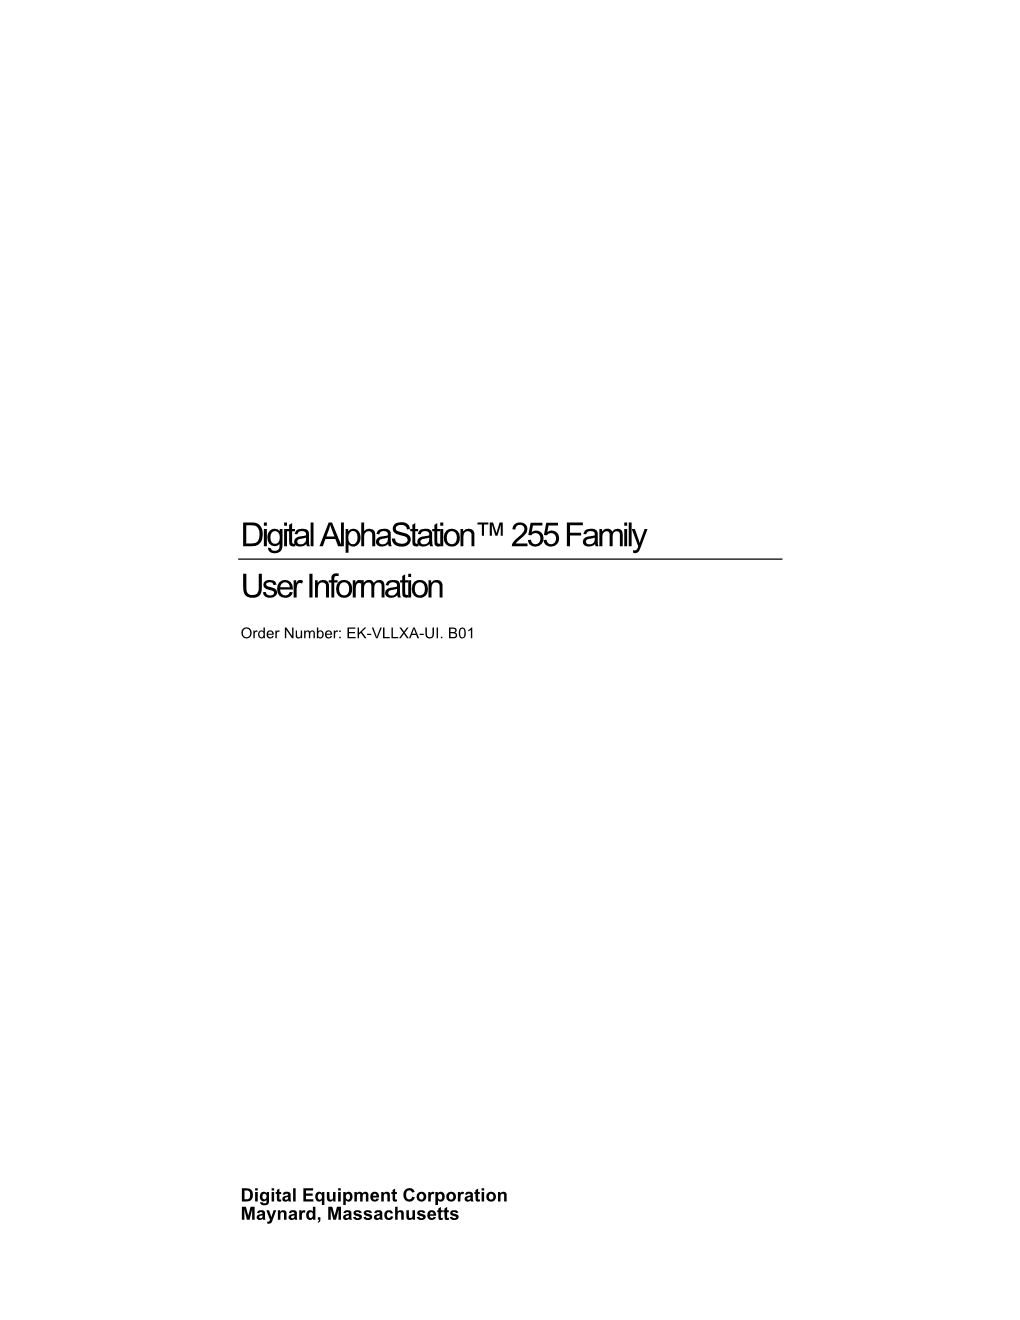 Digital Alphastation 255 Family User Information